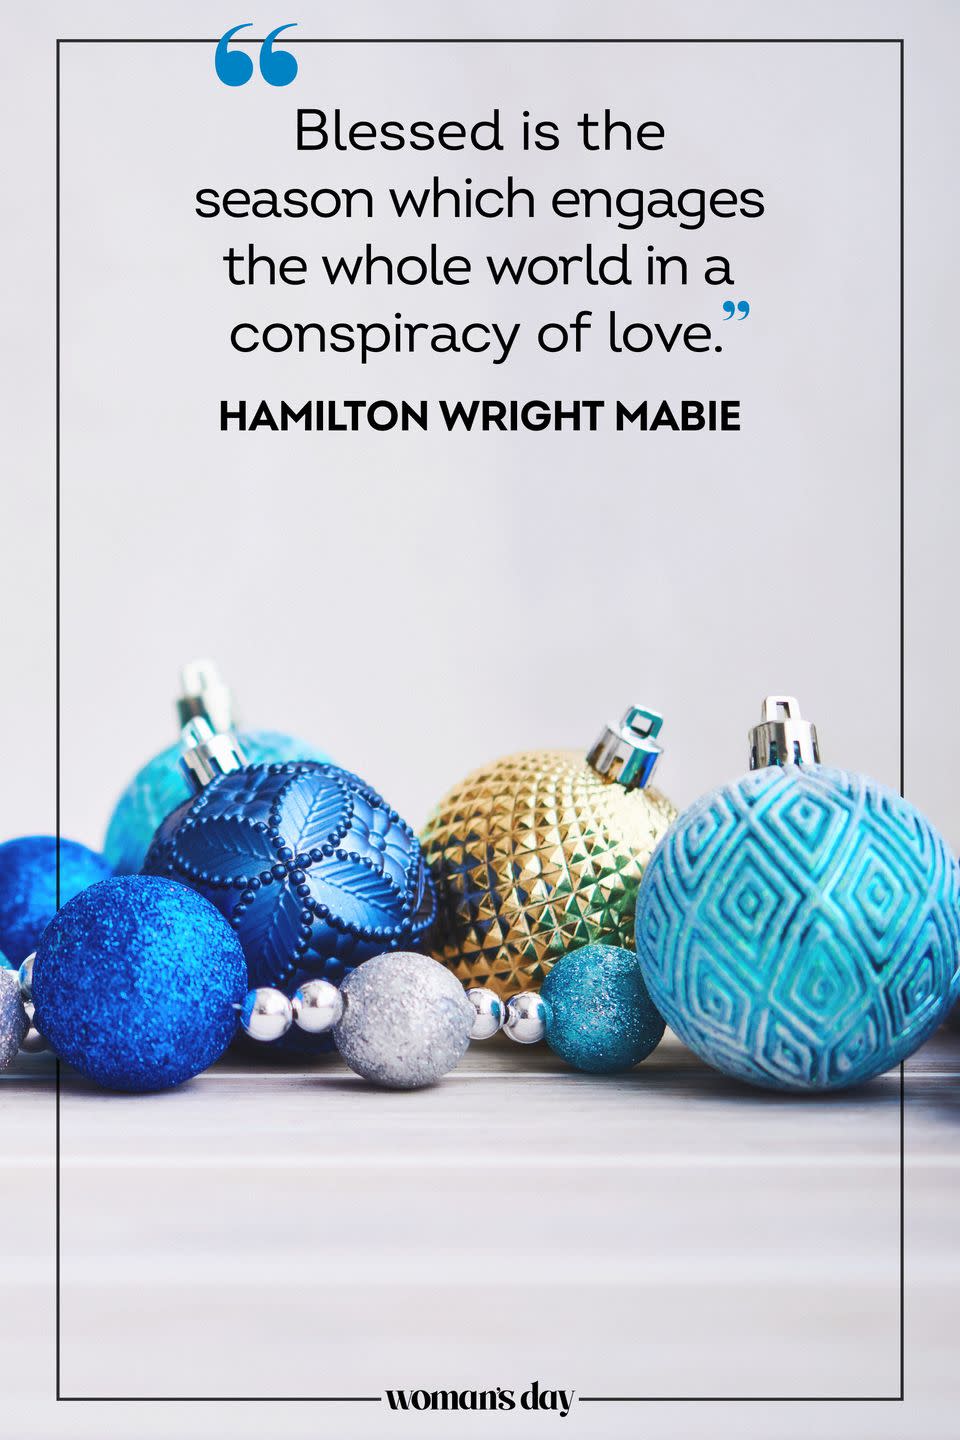 43) Hamilton Wright Mabie